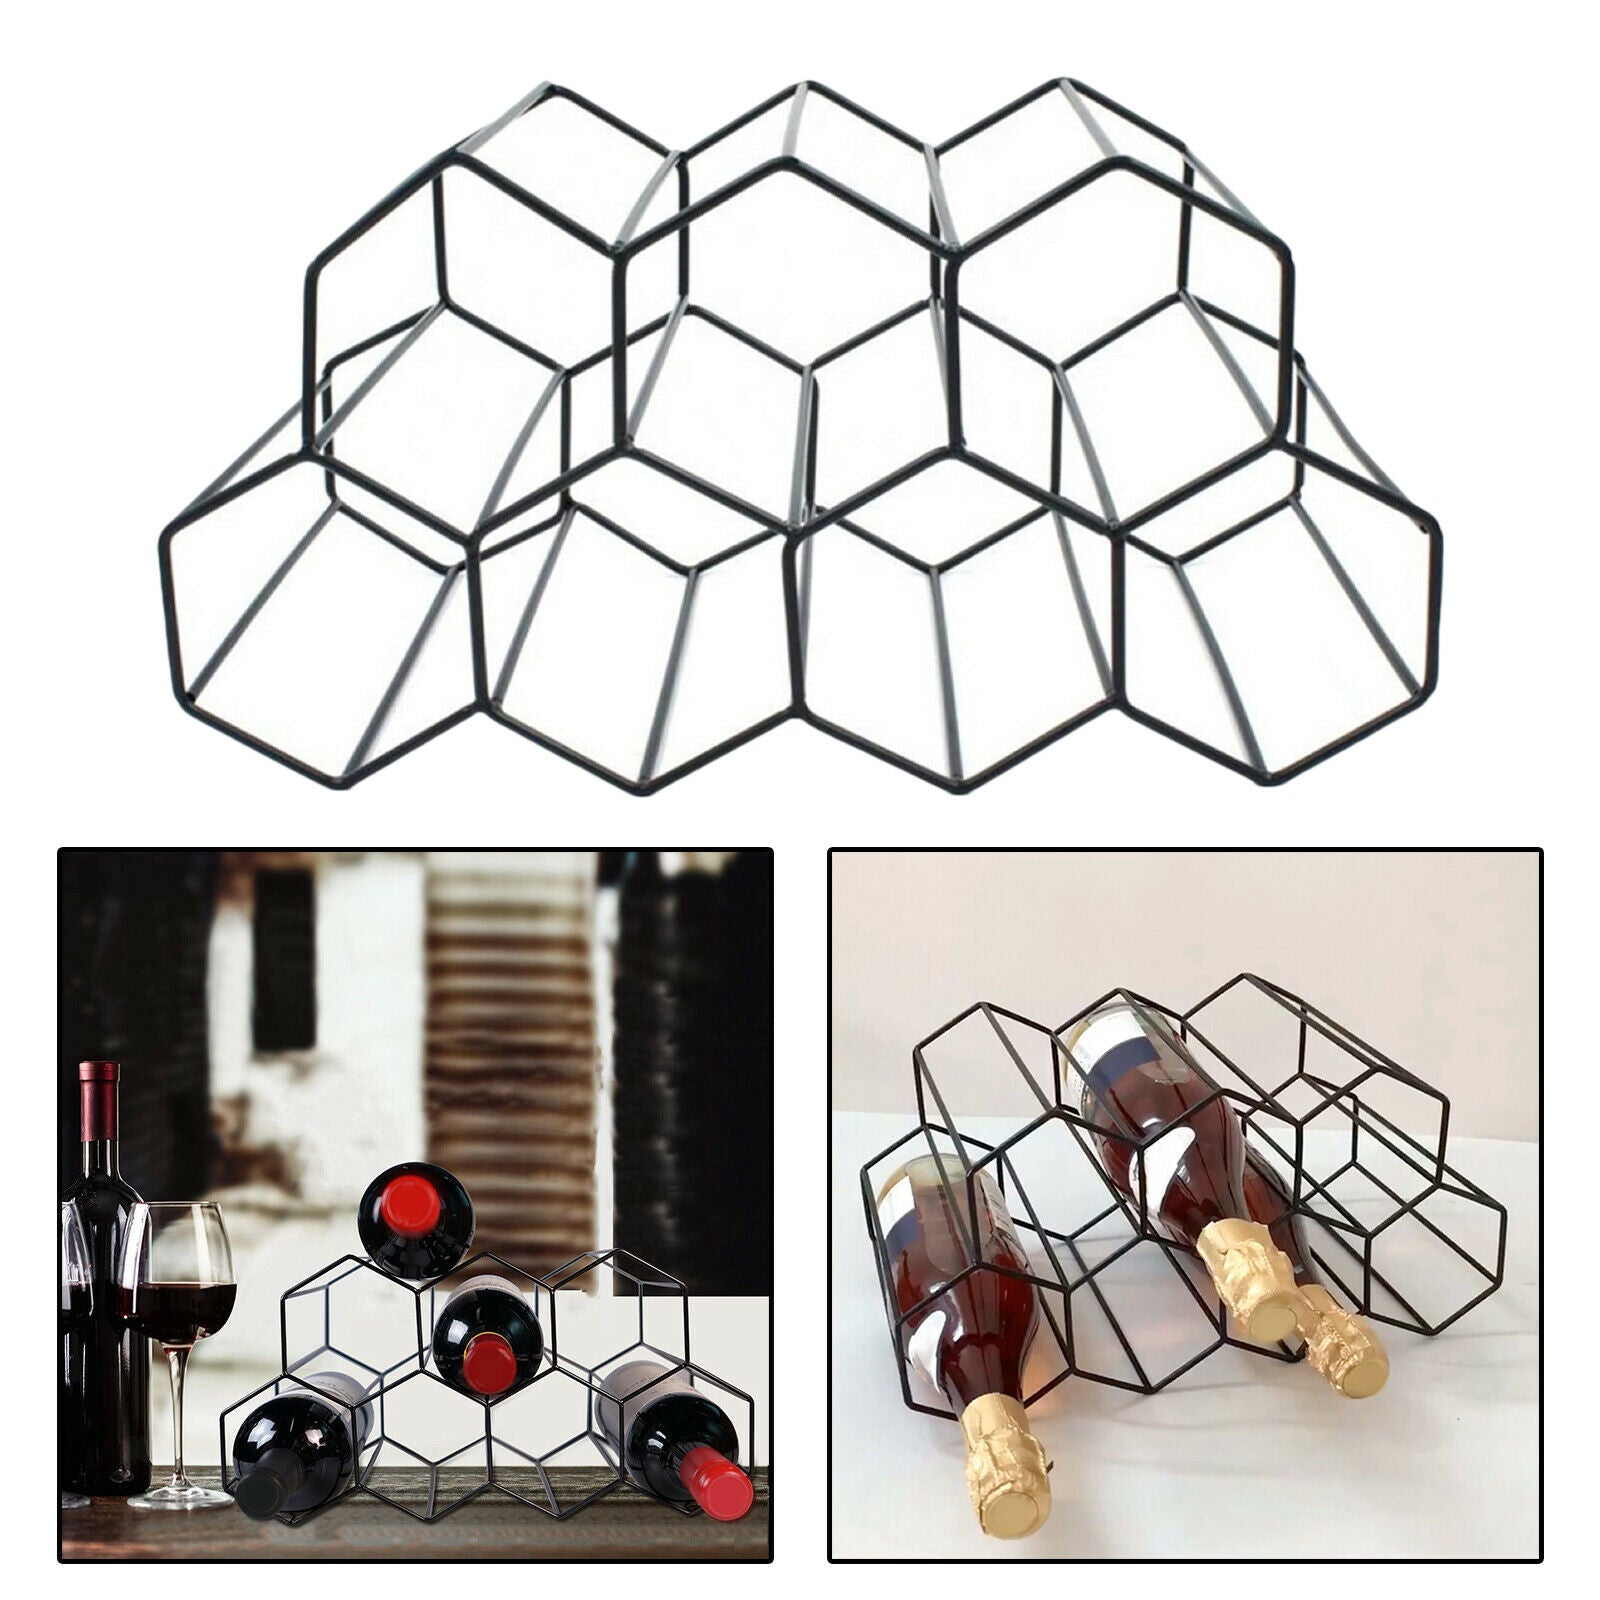 3 Tier Hexagonal Metal Freestanding Floor Stands for Counter Mini Bars Home